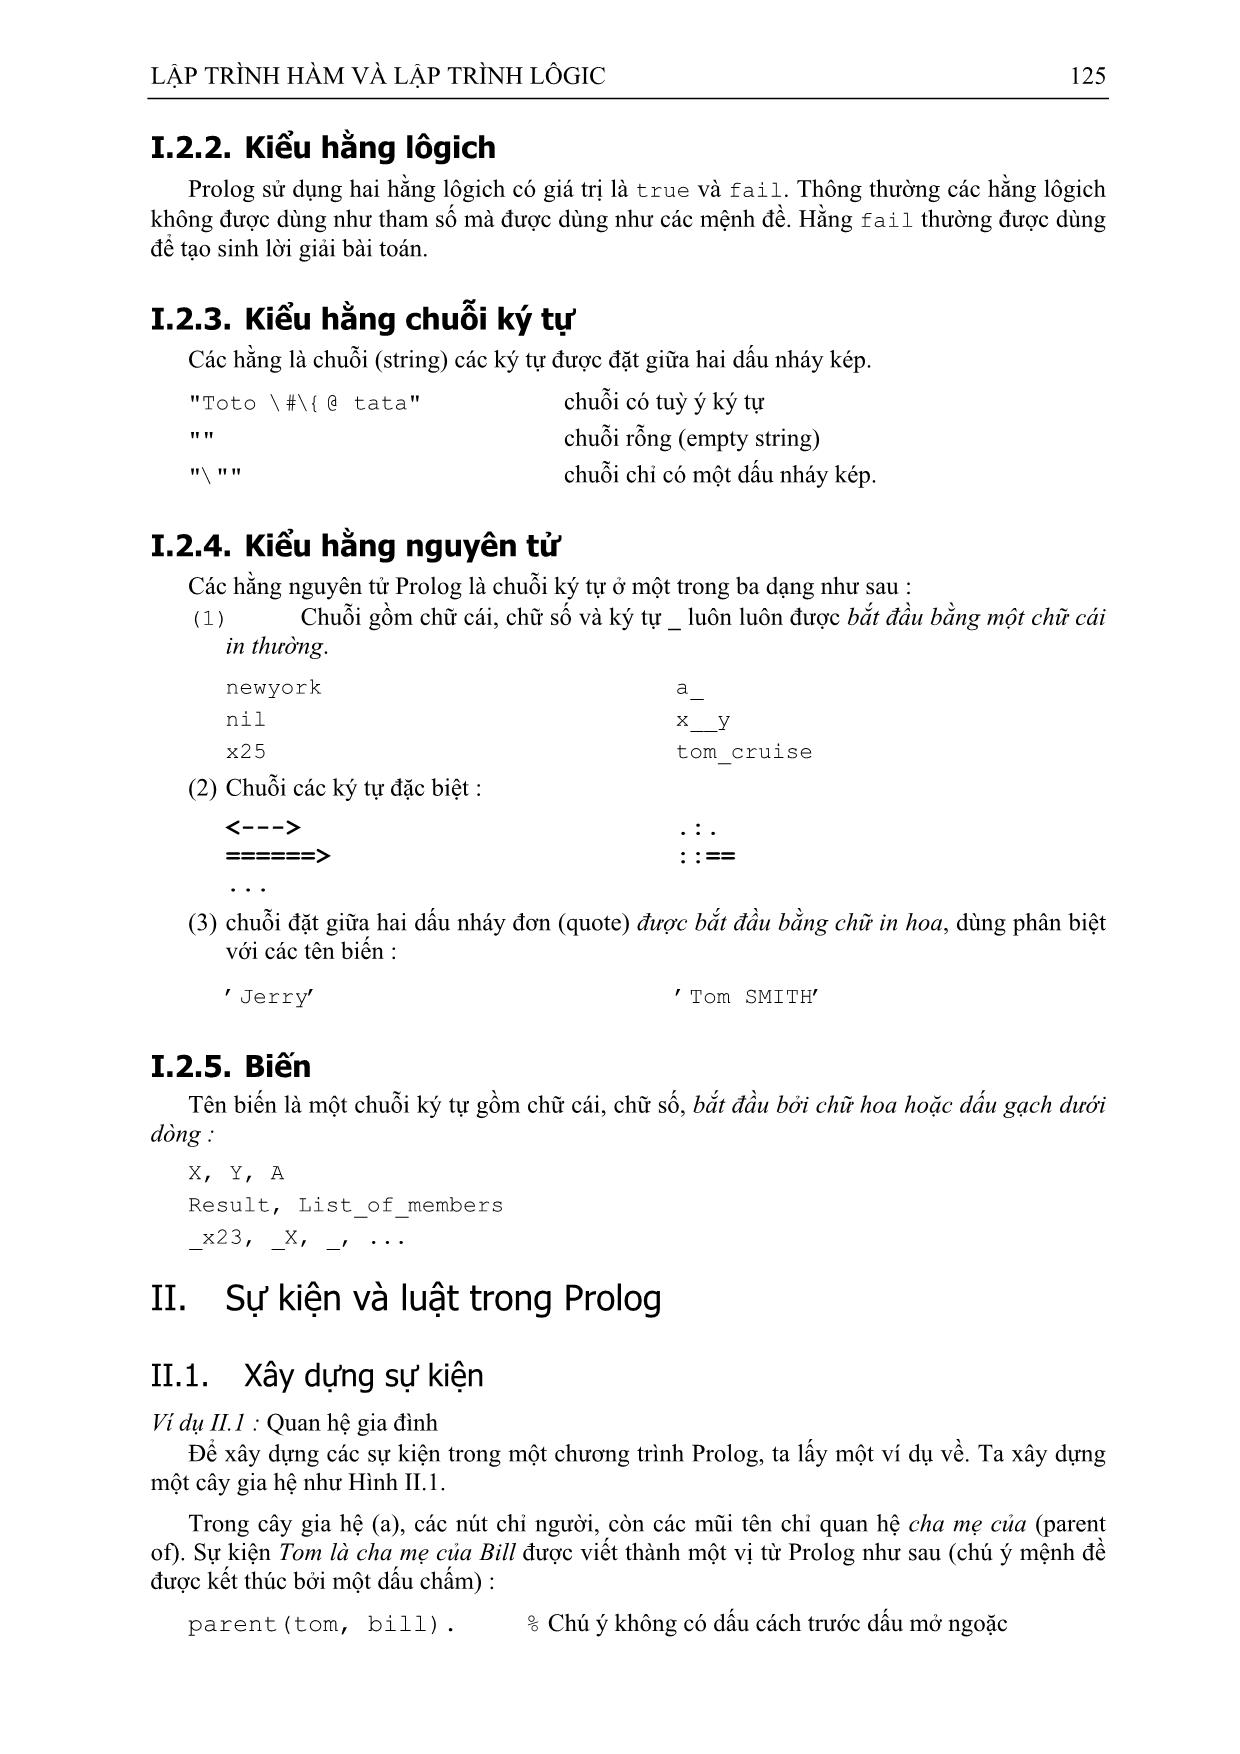 Giáo trình Lập trình hàm và lập trình Logic (Phần 2) trang 4